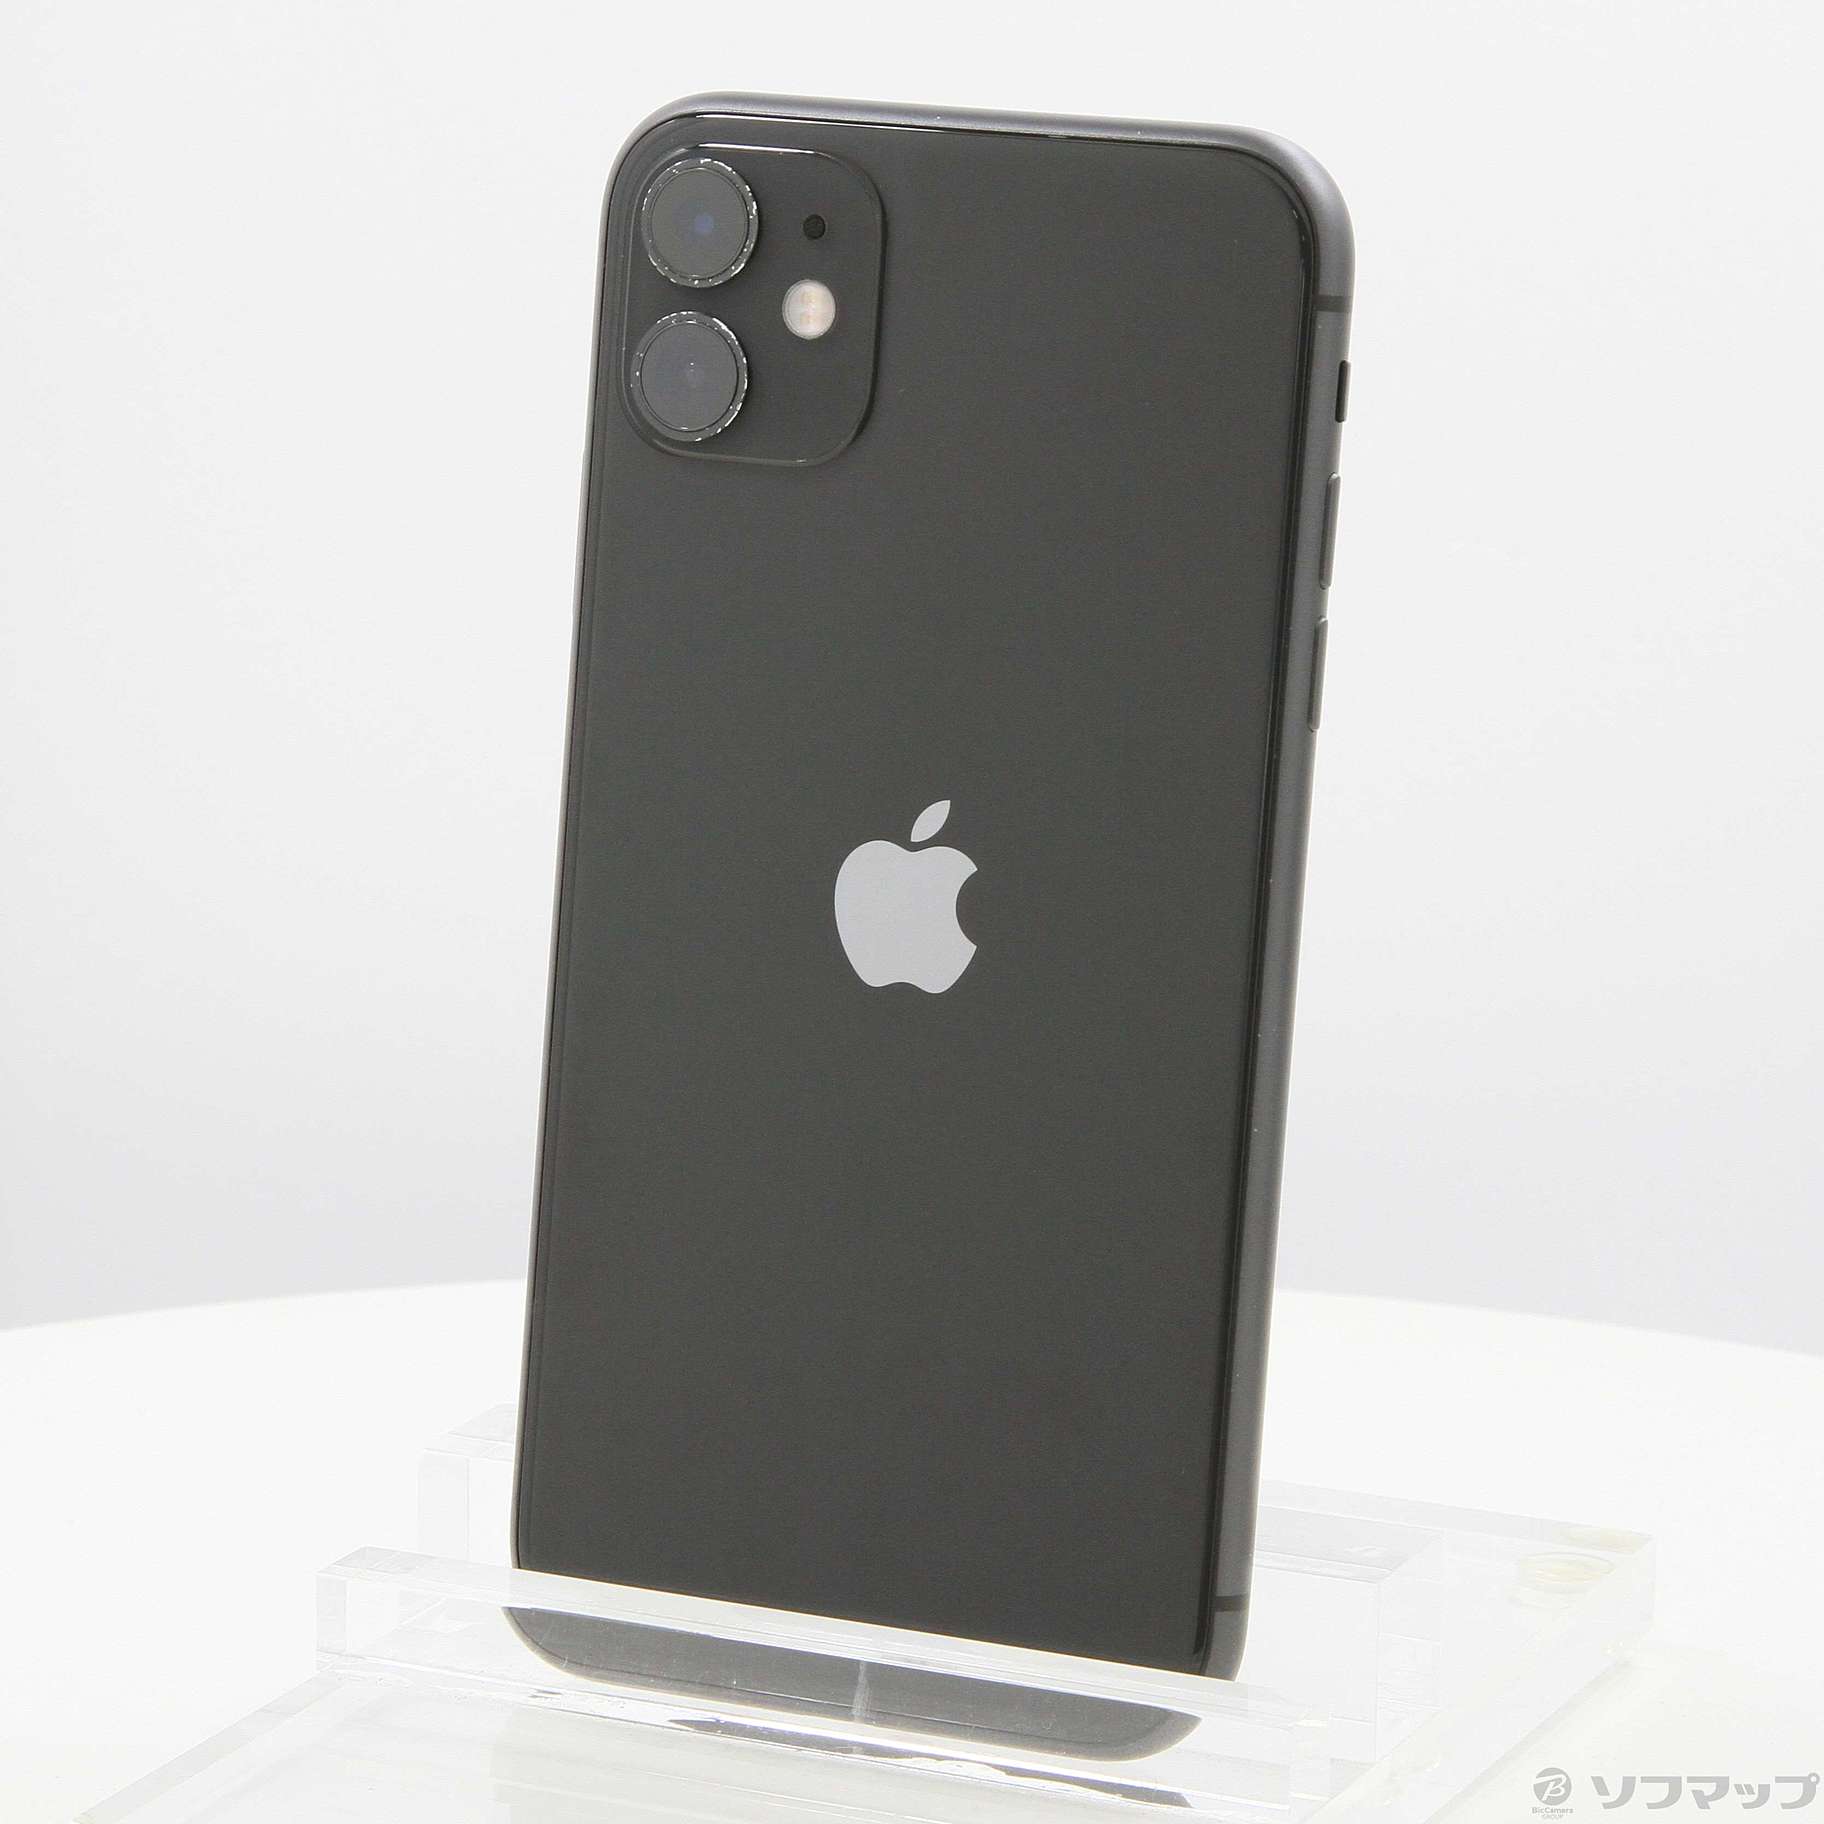 8,800円iPhone11 Softbank 64G ブラック